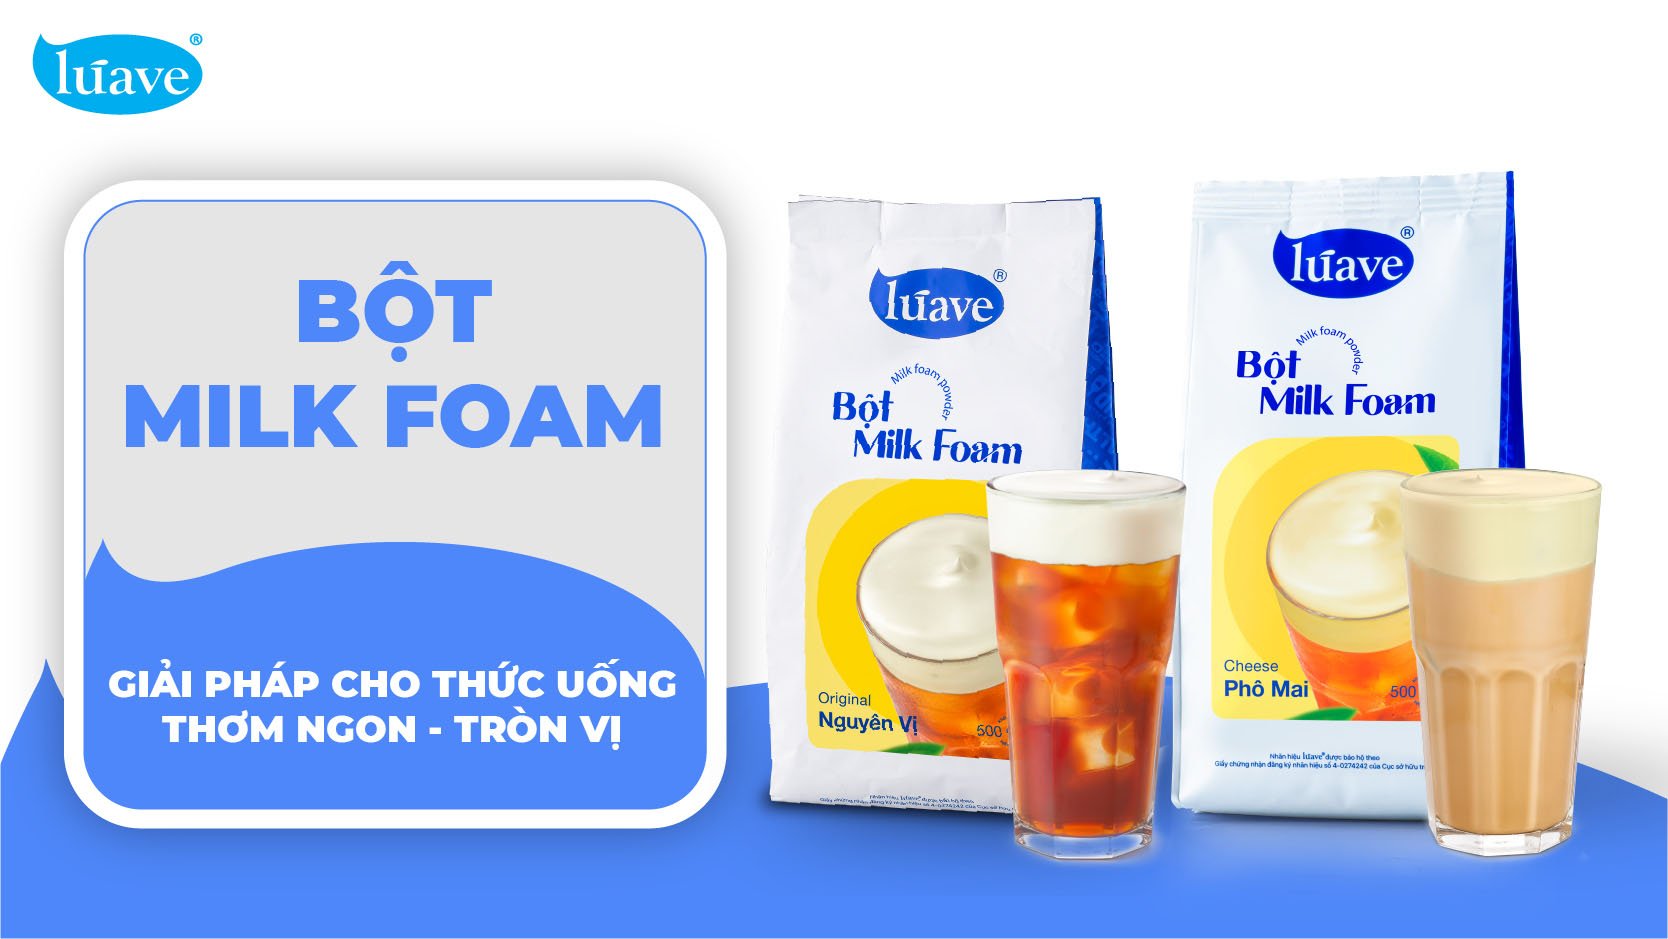 Bột Milk Foam - Giải pháp giúp cho thức uống thơm ngon - tròn vị